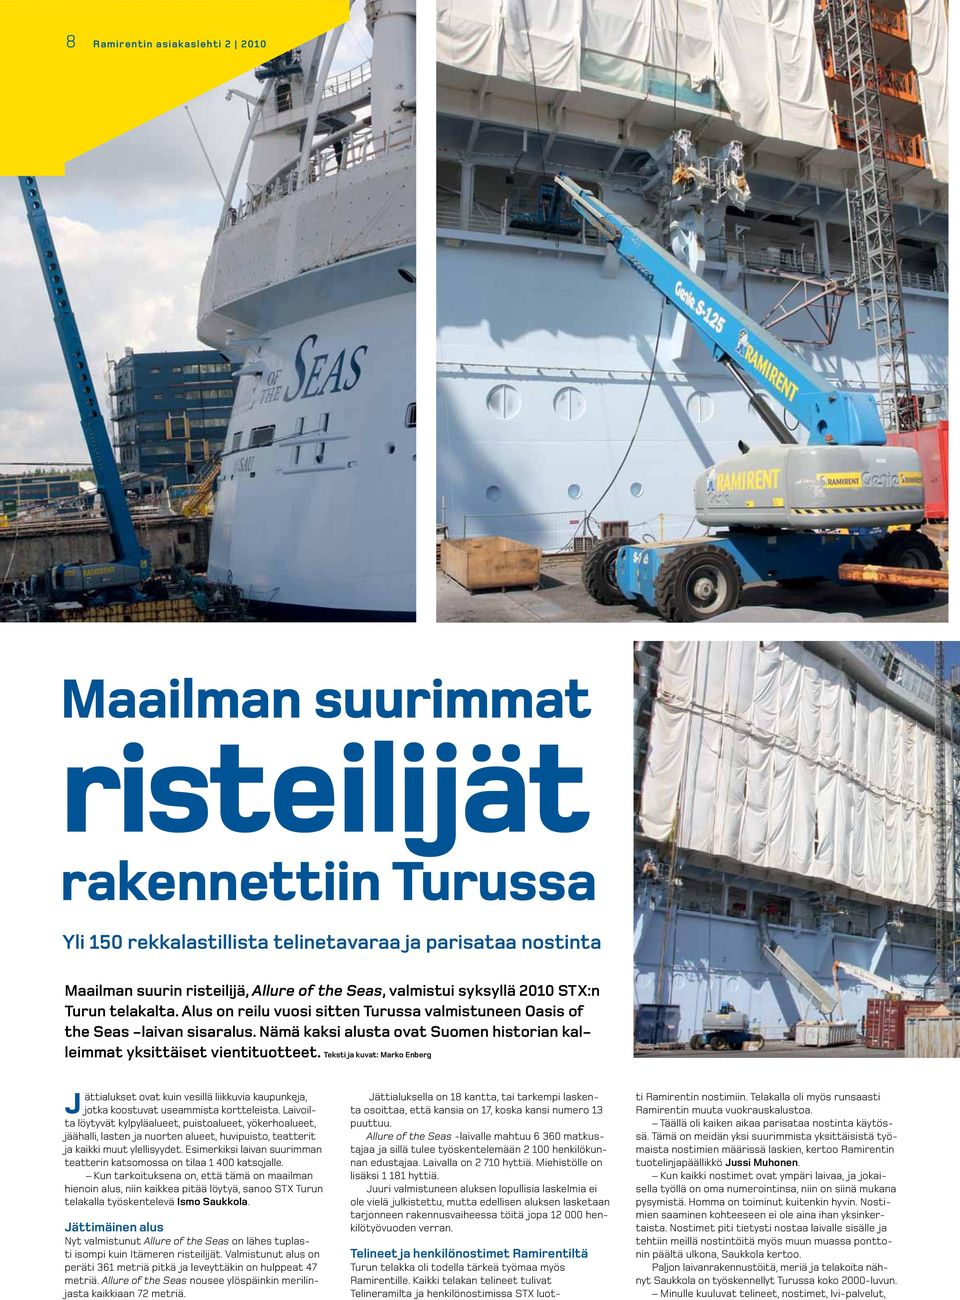 Nämä kaksi alusta ovat Suomen historian kalleimmat yksittäiset vientituotteet.